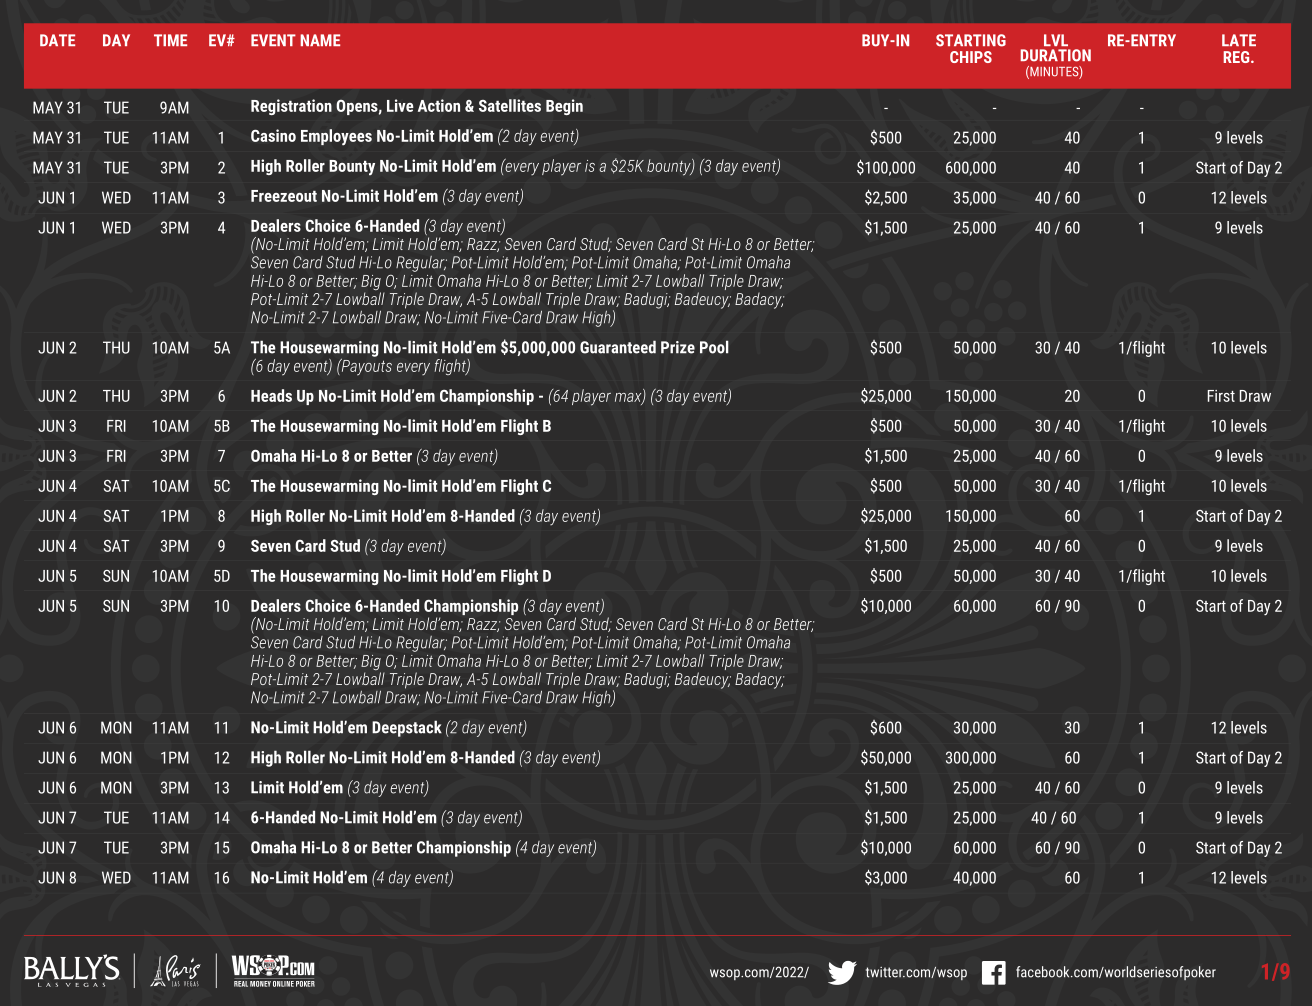 WSOP 2022 Schedule Revealed: 88 Live Bracelet Events, 21 Online Bracelets -- And No Masks or